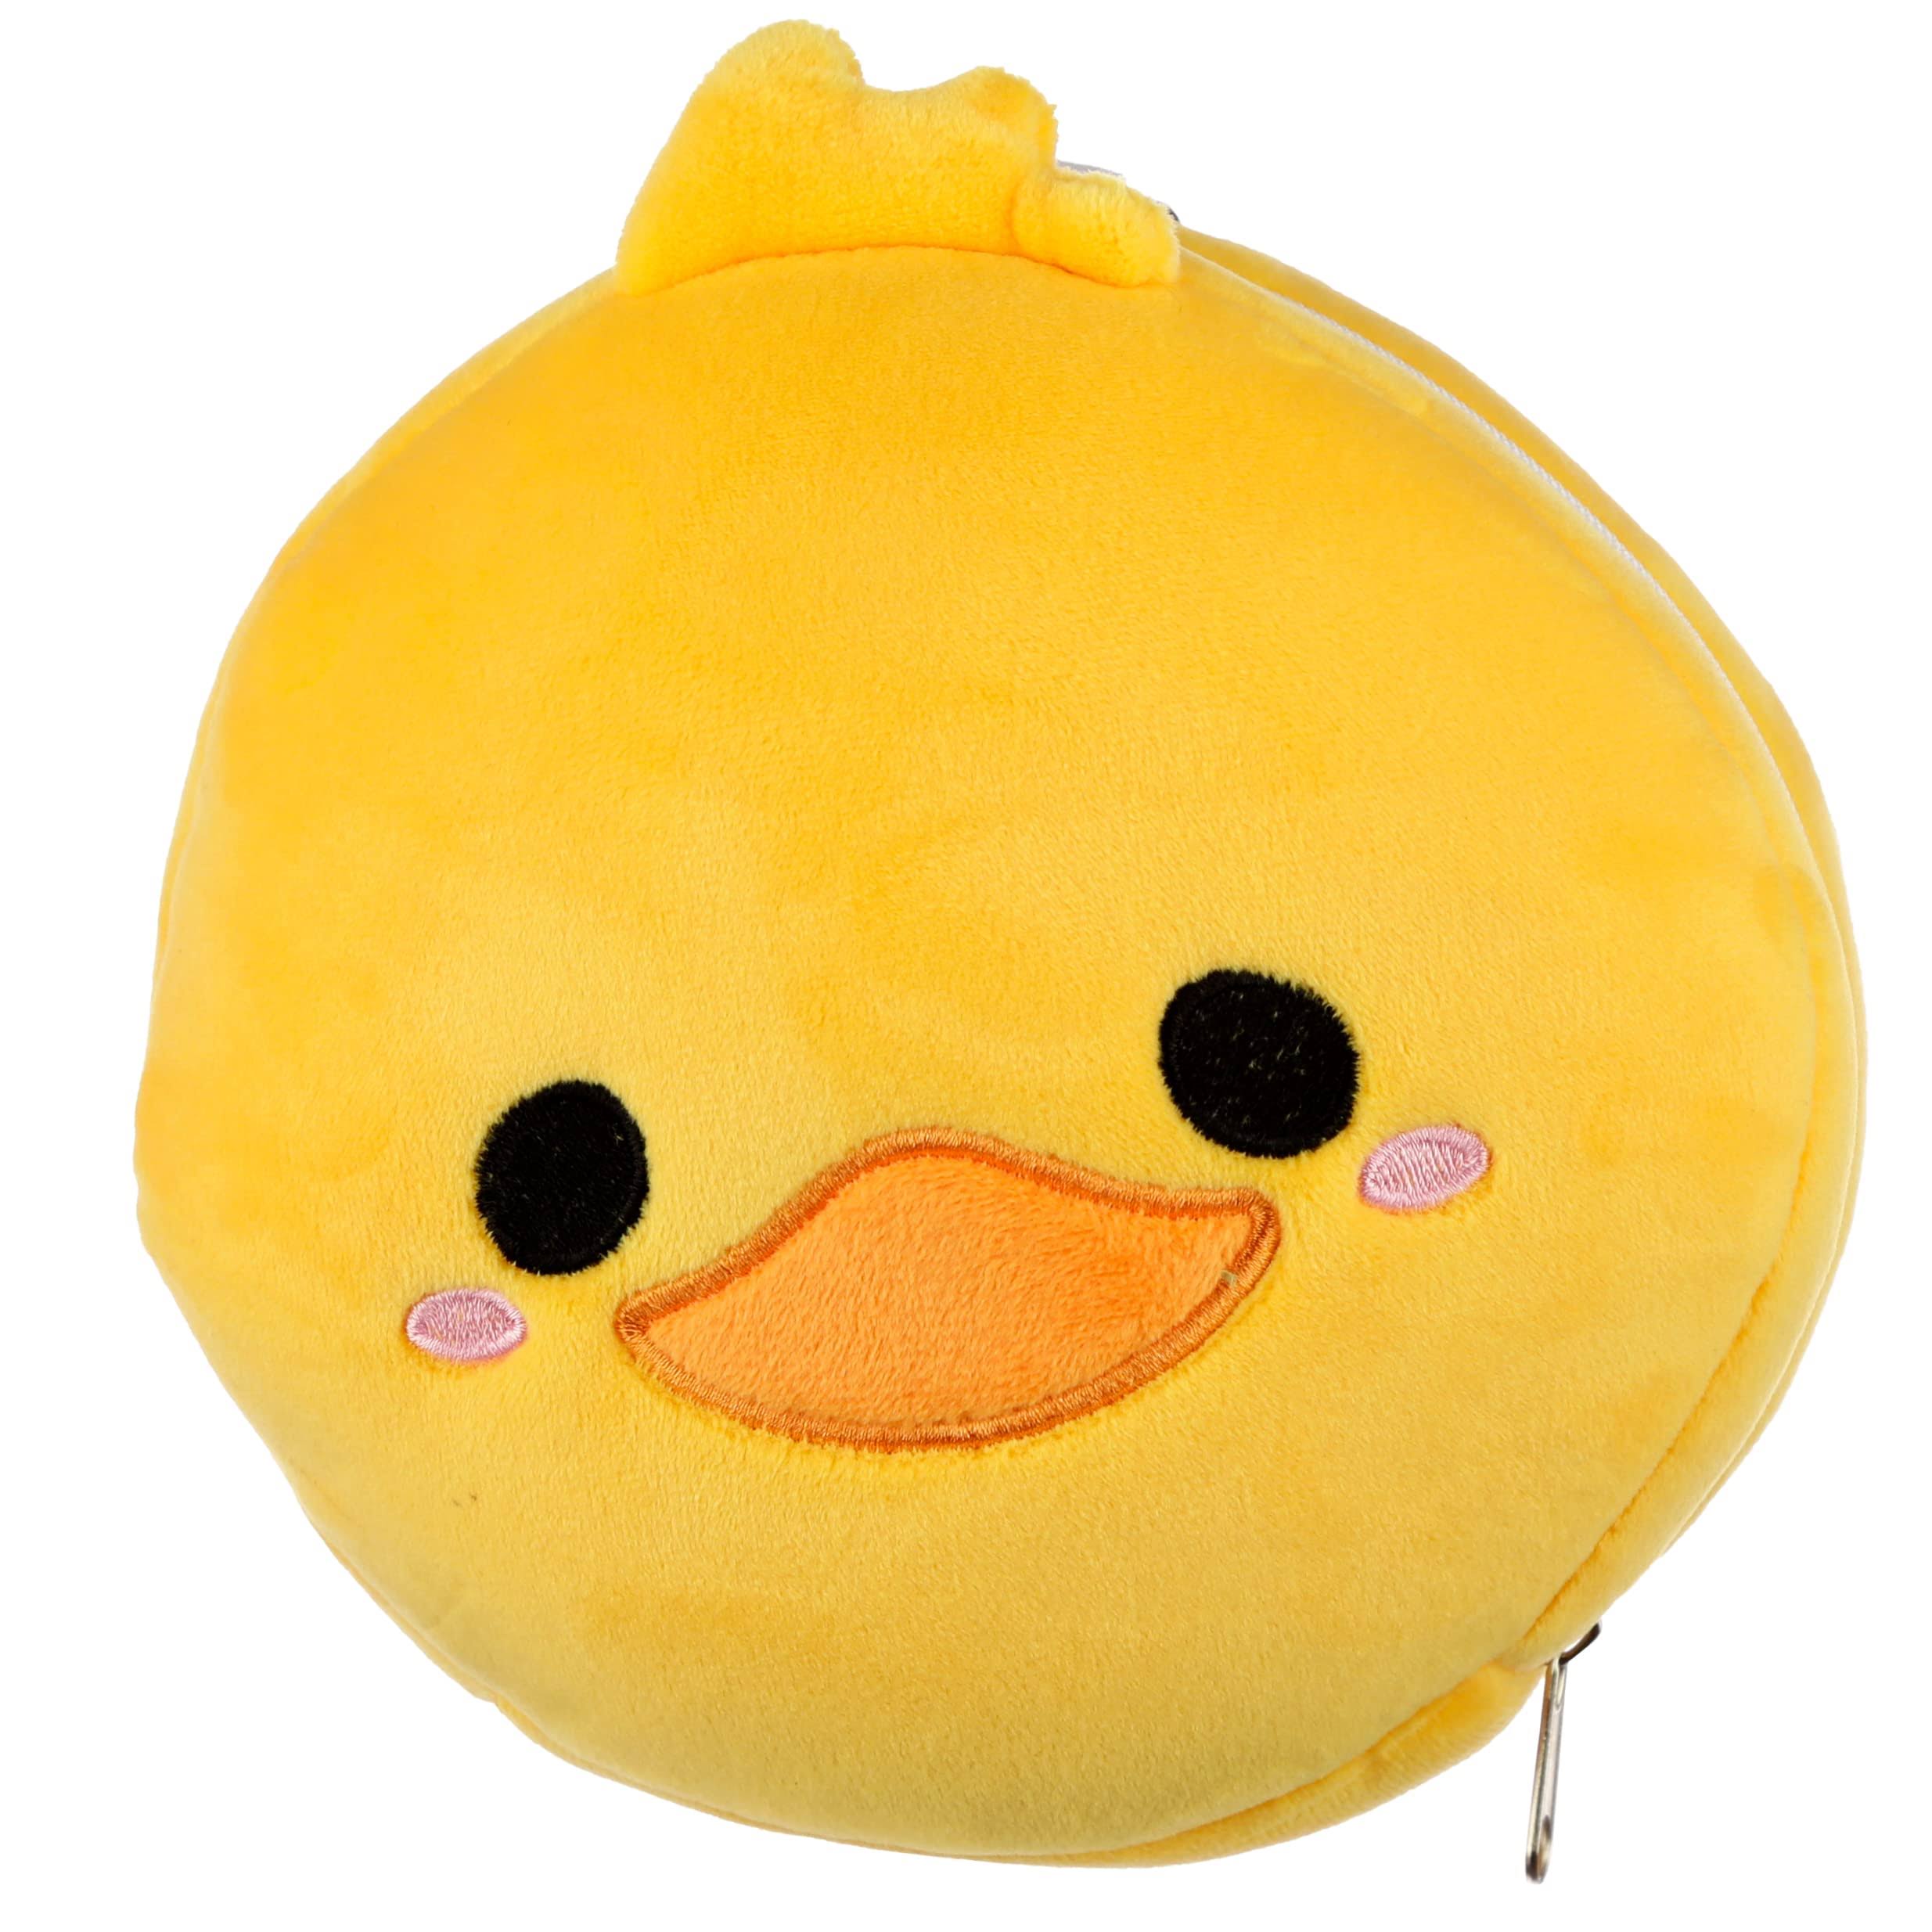 Relaxeazzz Plush Cutiemals Duck Round Travel Pillow & Eye Mask